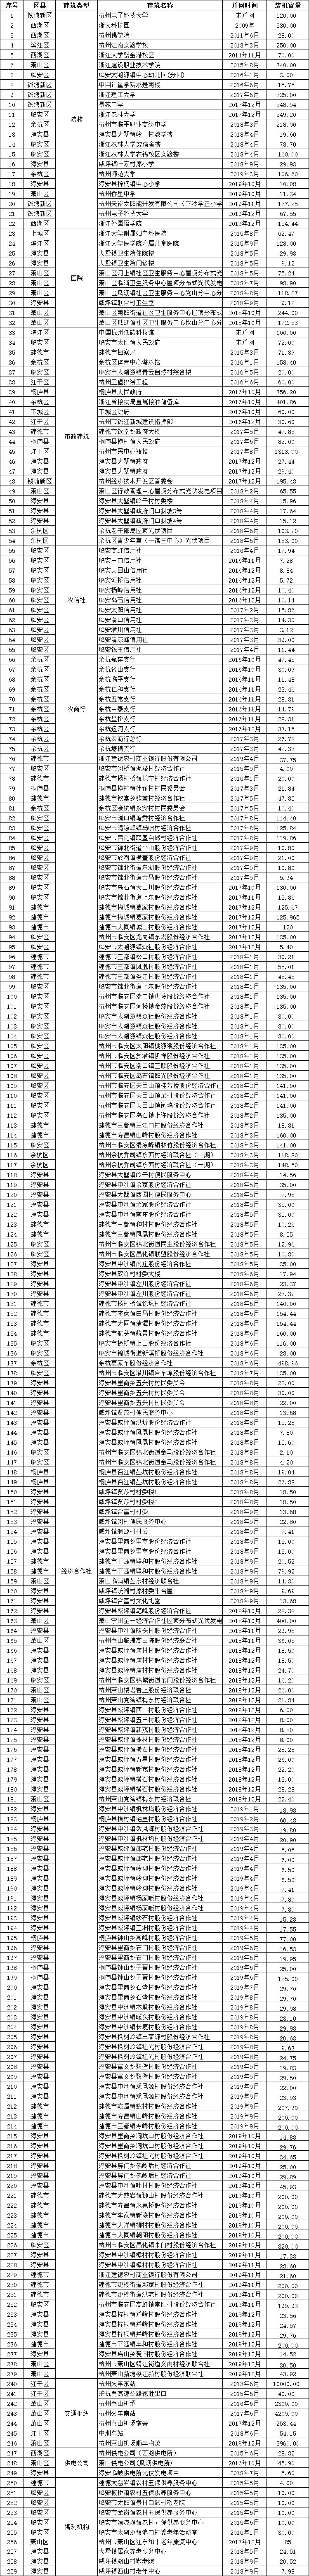 杭州BIPV机构清单.jpg